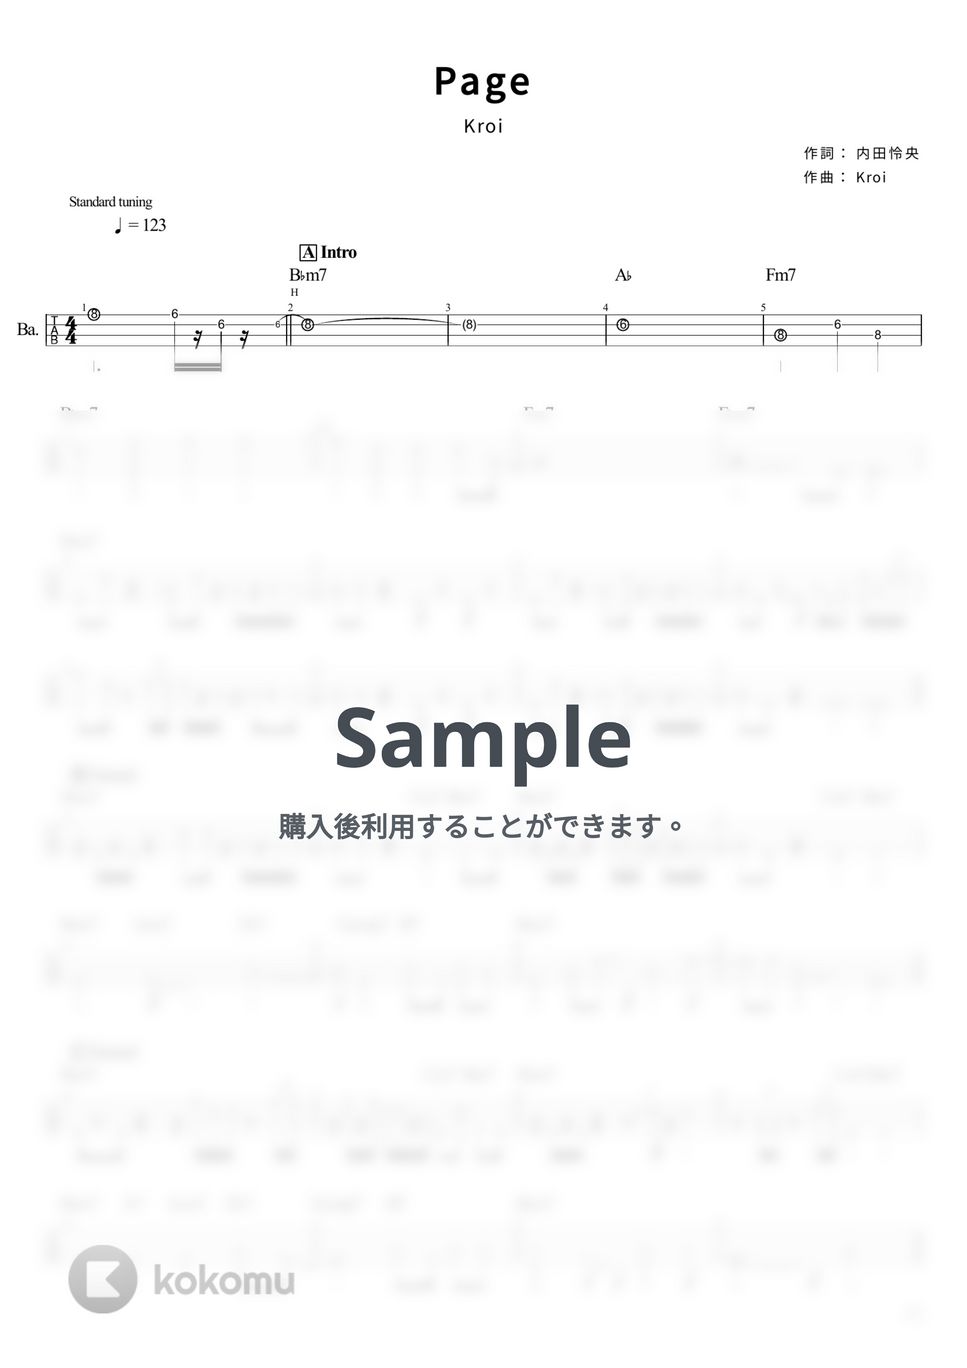 Kroi - Page (Tabのみ/ベース Tab譜 4弦) by T's bass score